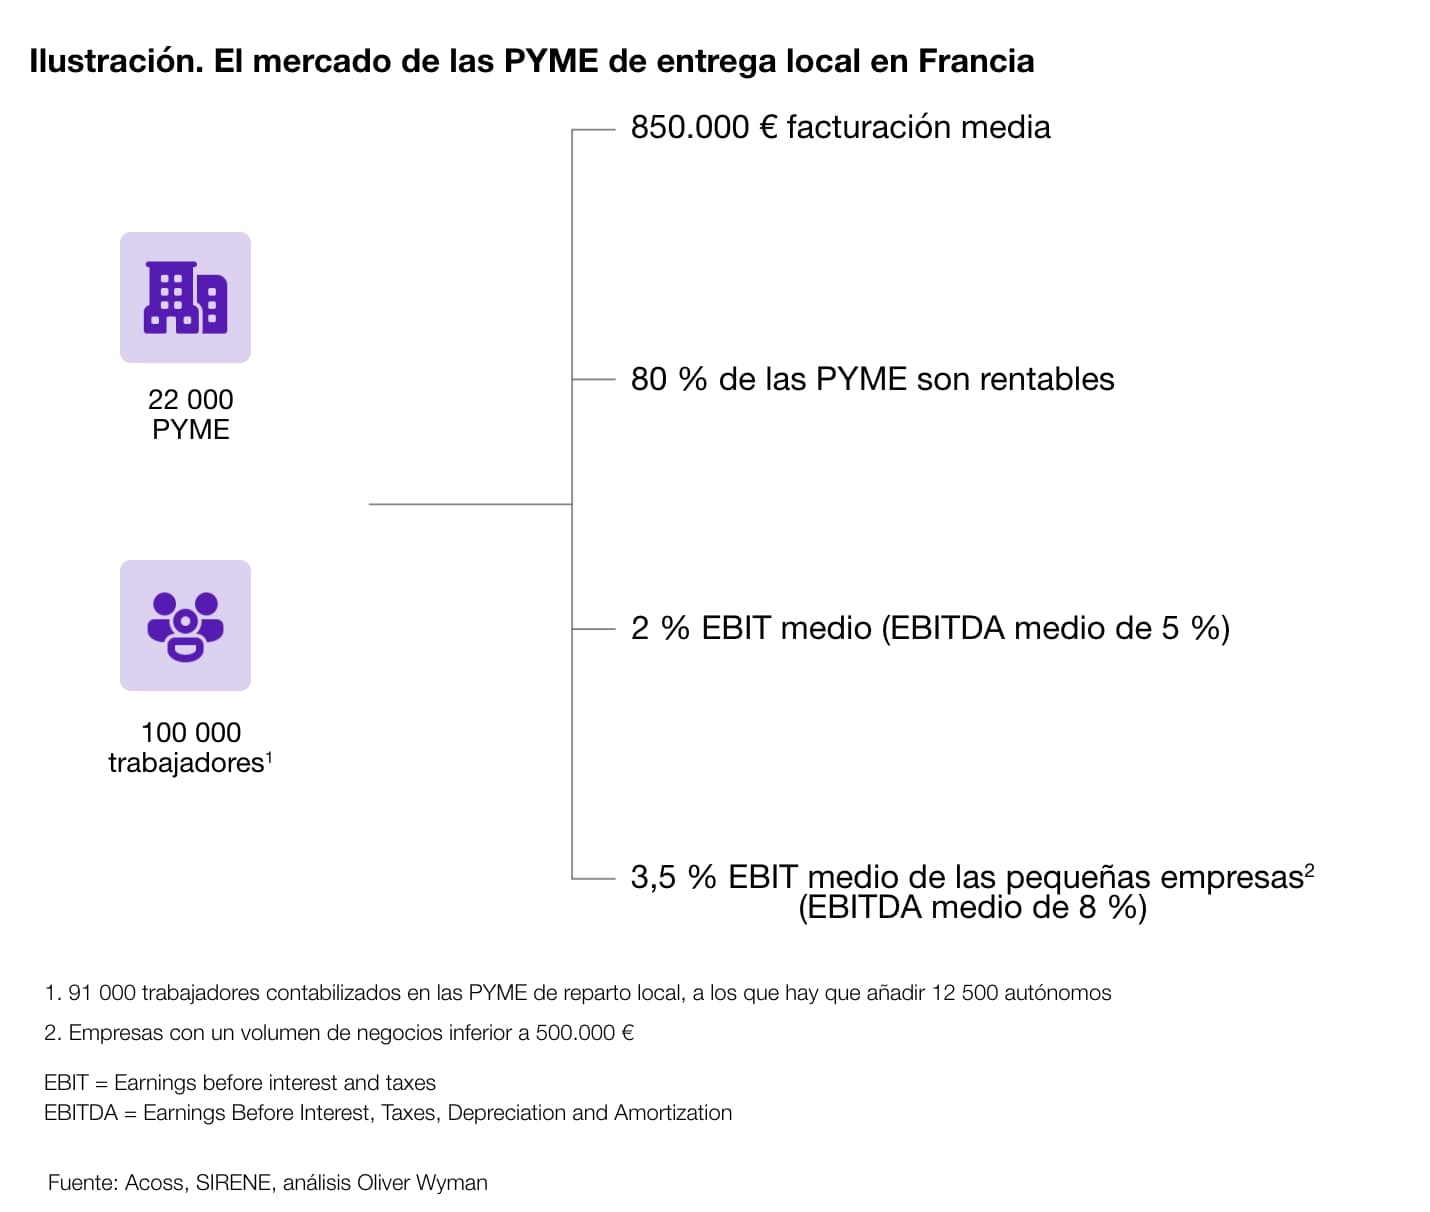 El mercado de las PYME de entrega local en Francia